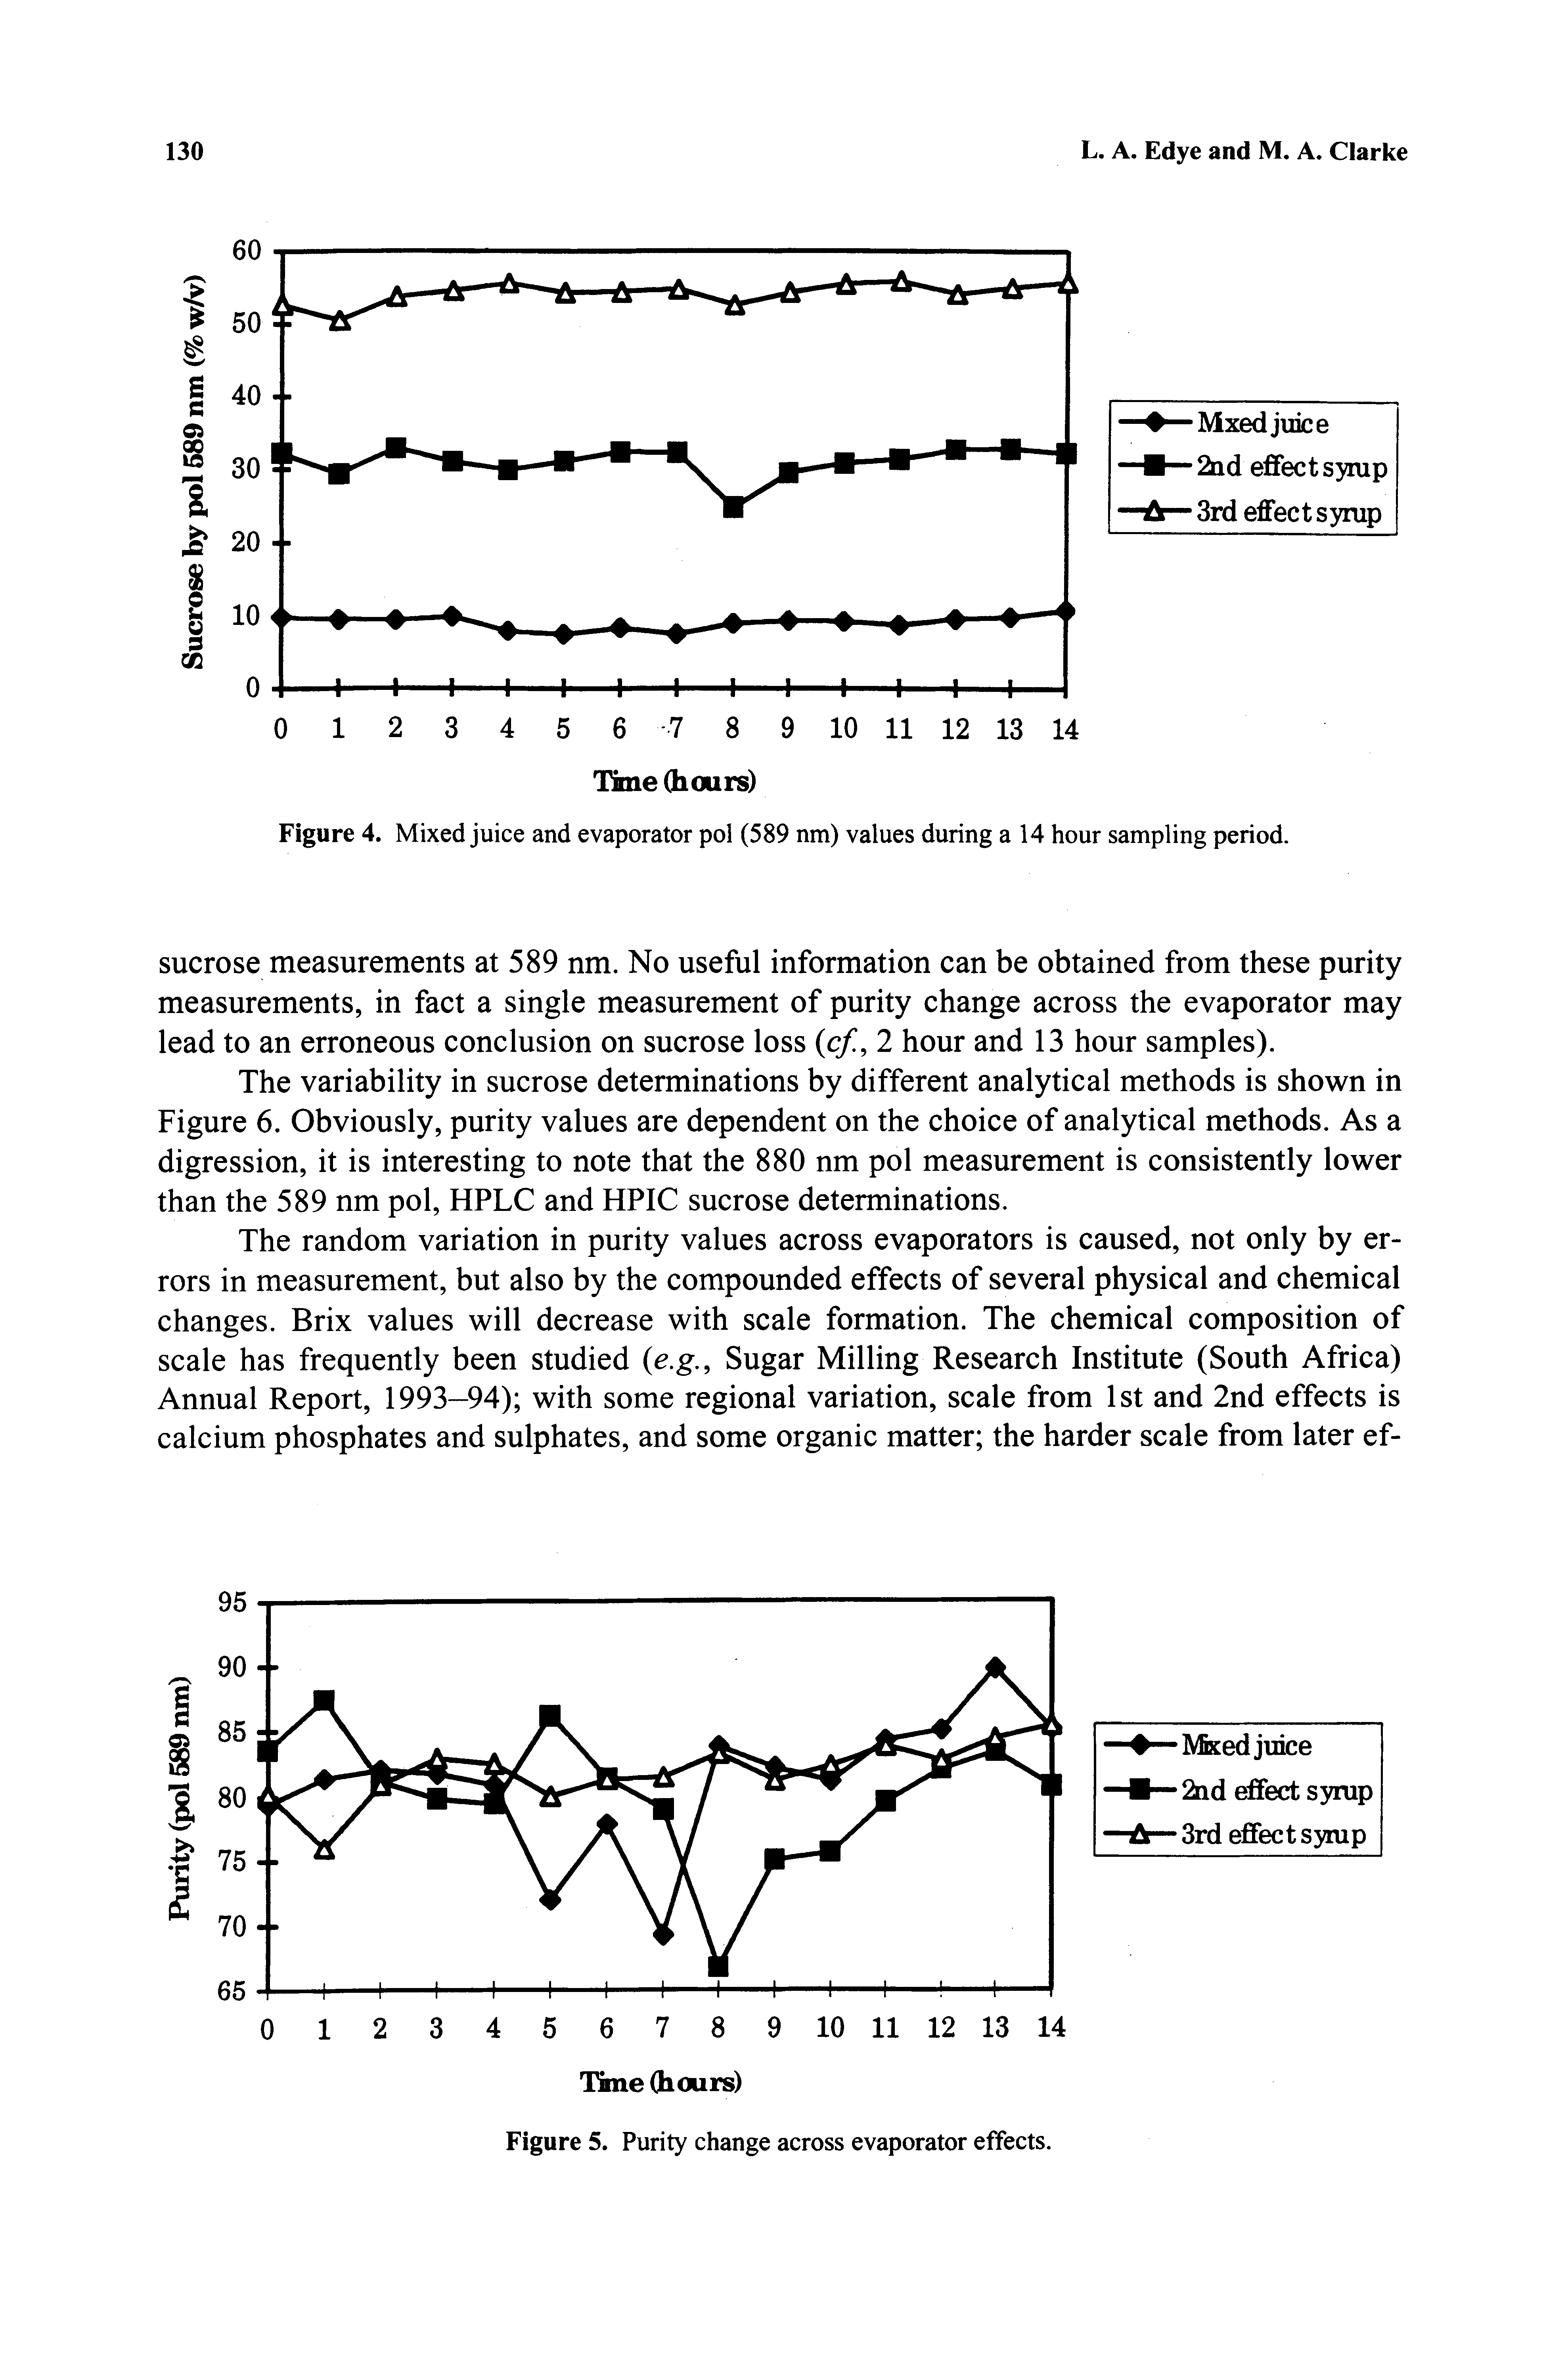 Figure 5. Purity change across evaporator effects.